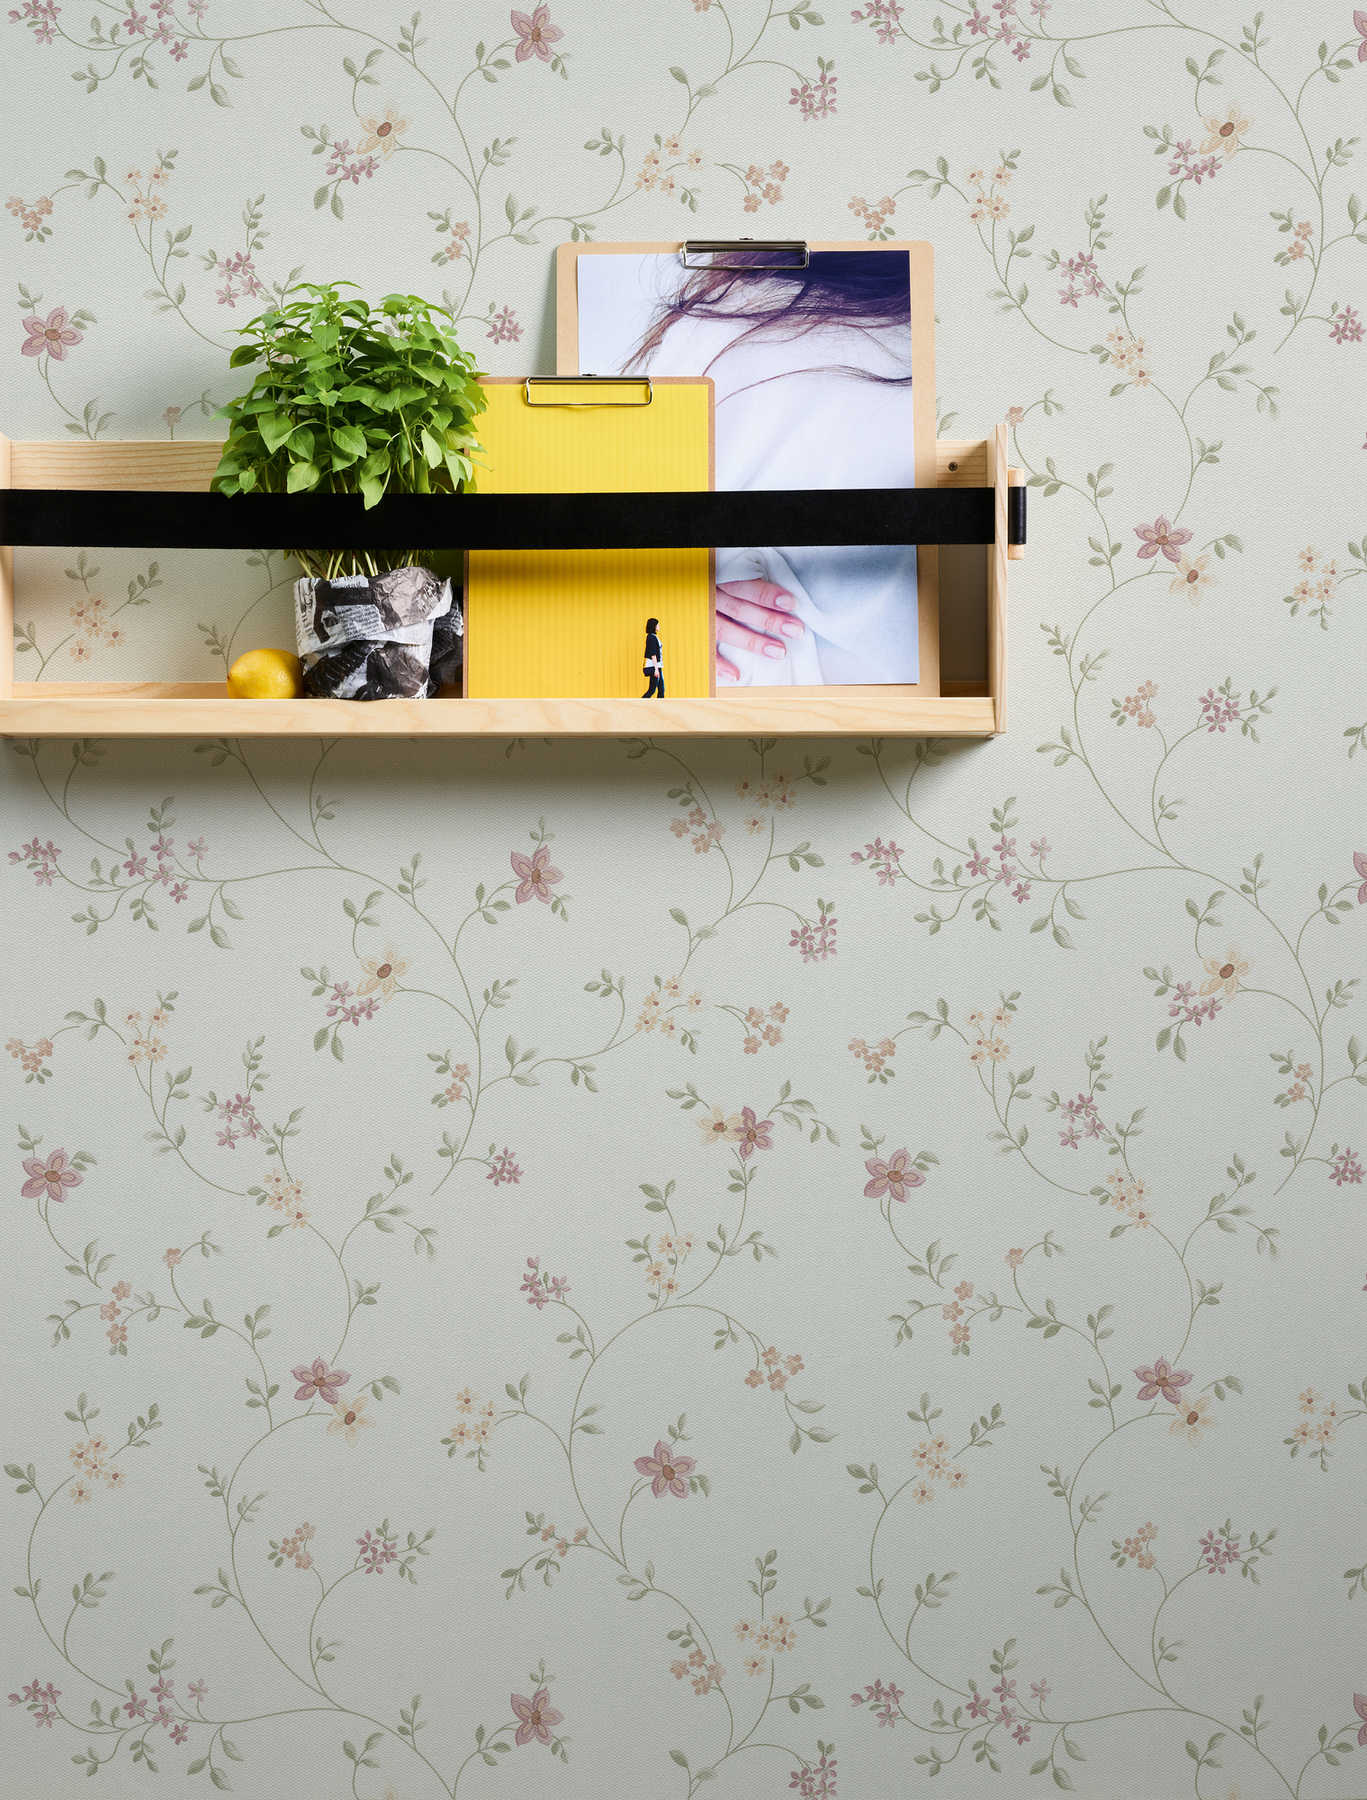             Tapete mit Blüten Muster im Landhaus Stil – Bunt, Grün, Weiß
        